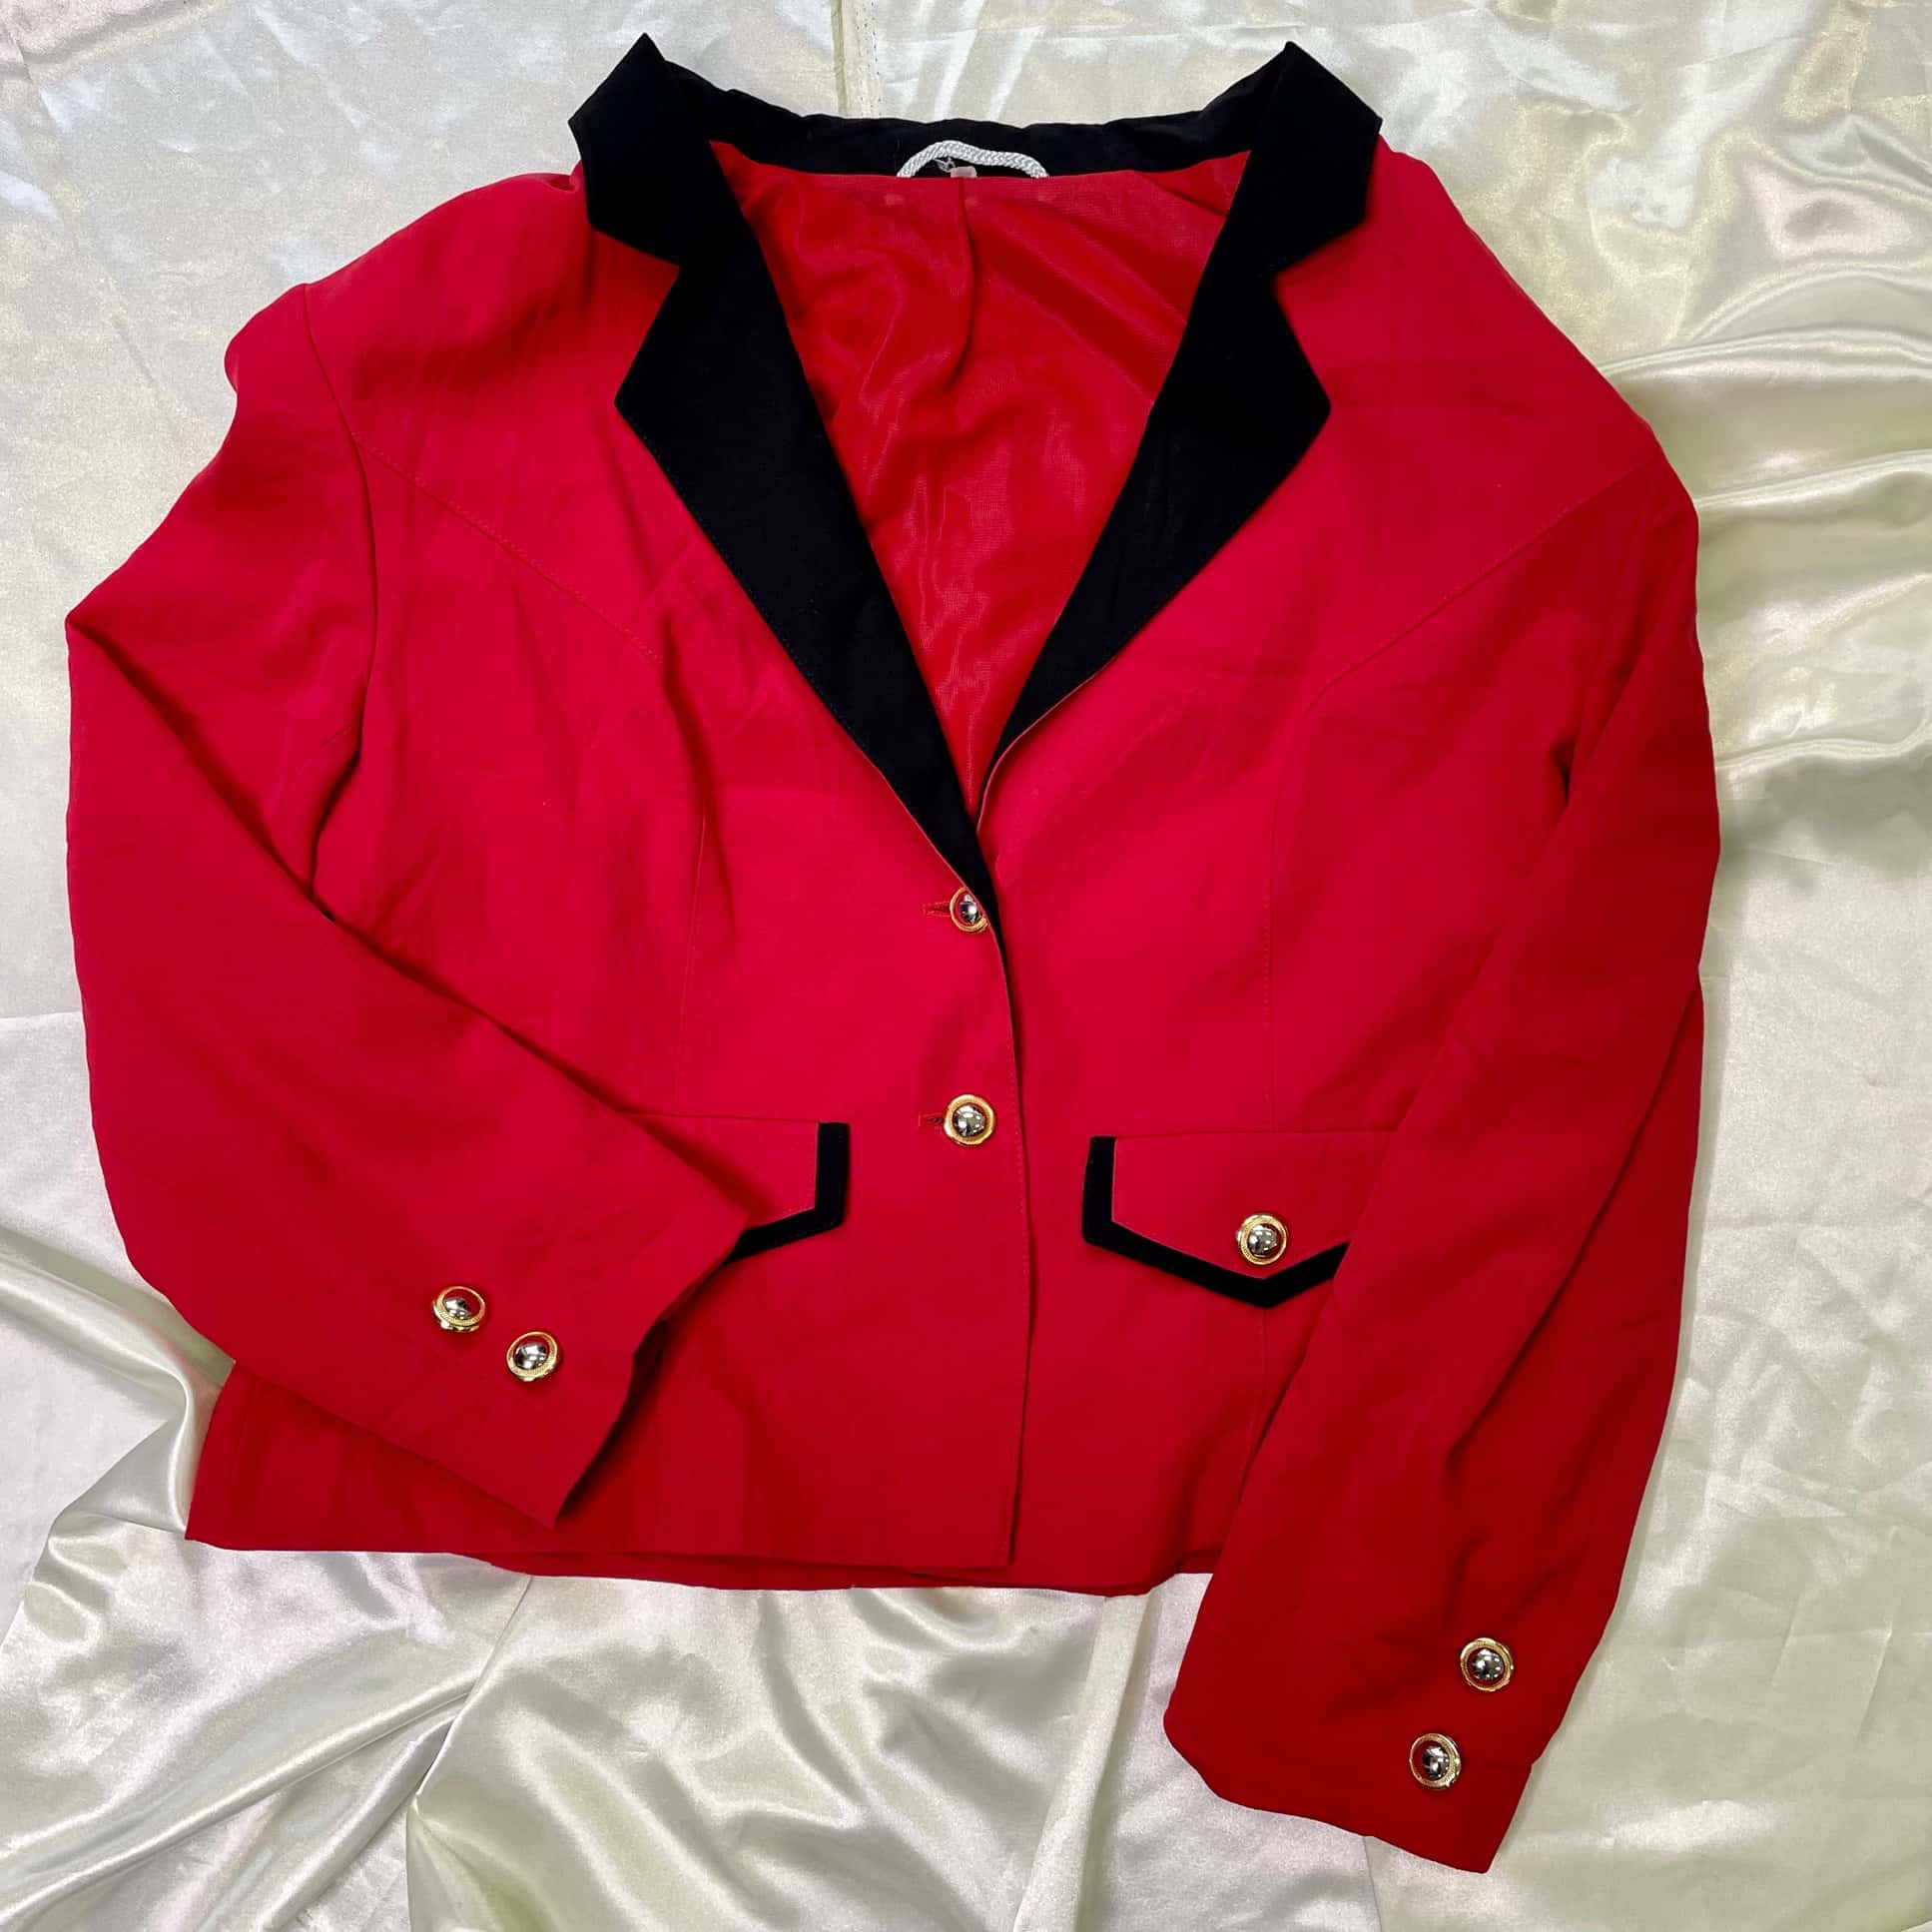 Red blazer with black trims - Szerkó Budapest